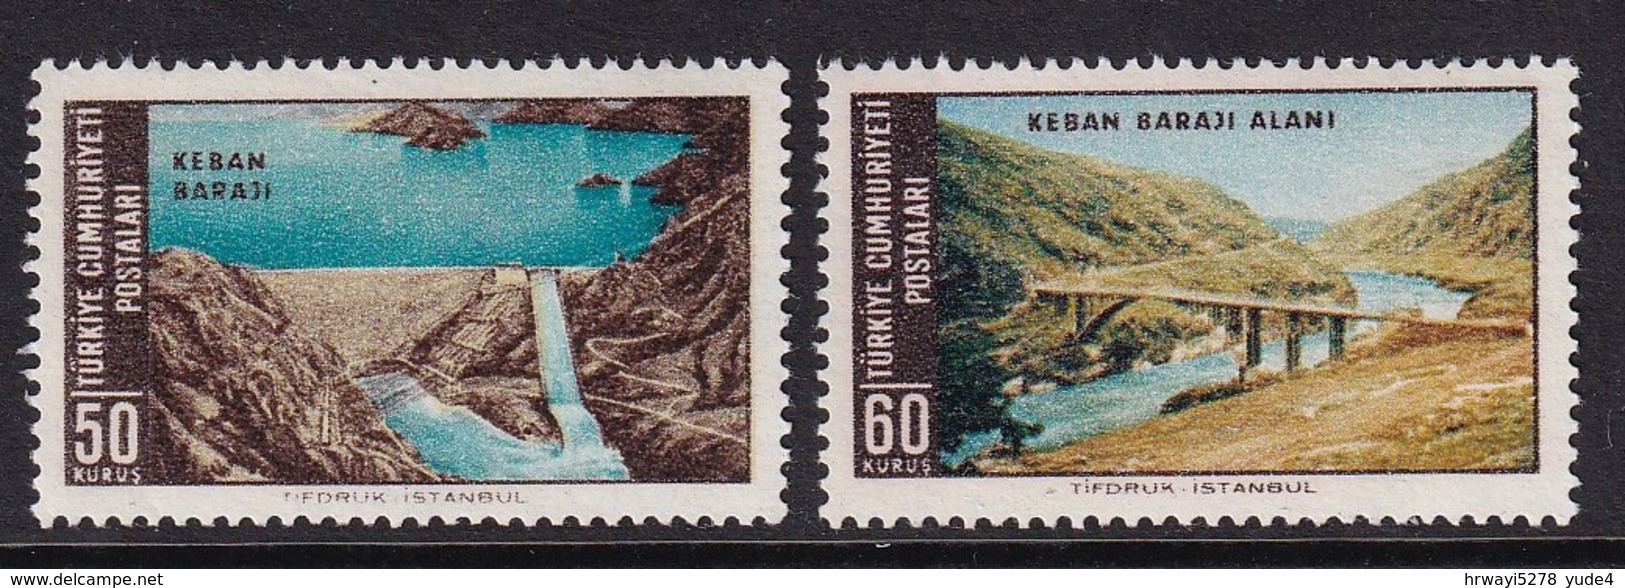 Turkey 1966, Complete Set, MNH - Unused Stamps